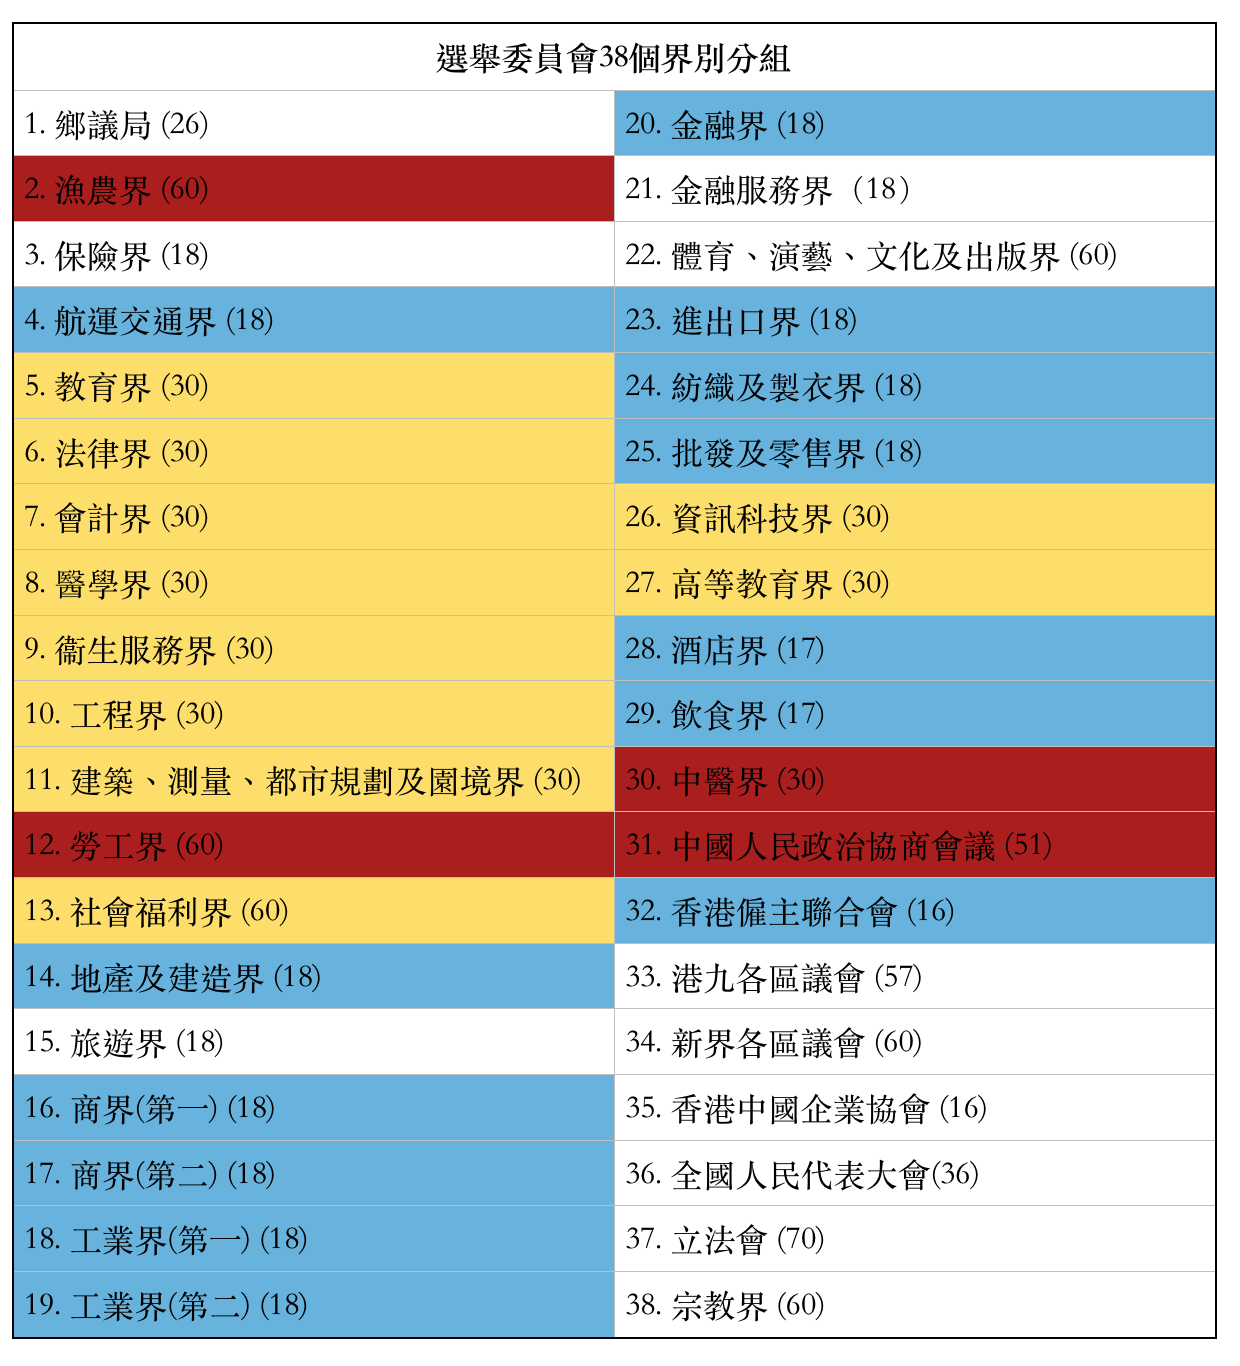 對比2016年選委會選舉。黃色、藍色、紅色分別為泛民、原「唐營」和原「梁營」當選選委的集中界別。